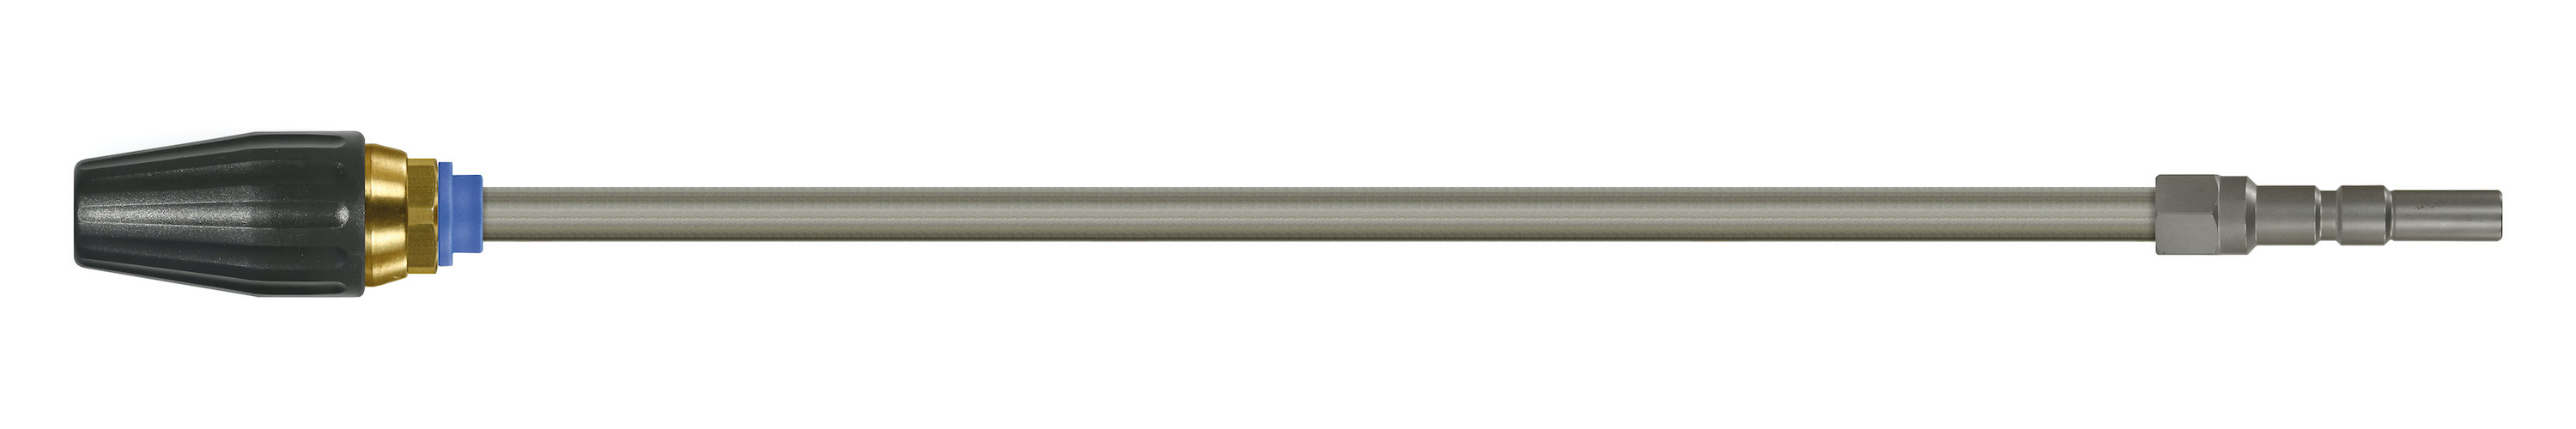 Coupleur KW. Lances tube zingué avec rotabuse ST-357.1. Cône 20°. 100 - 250 bar. Max. 100 °C, Calibre 065.